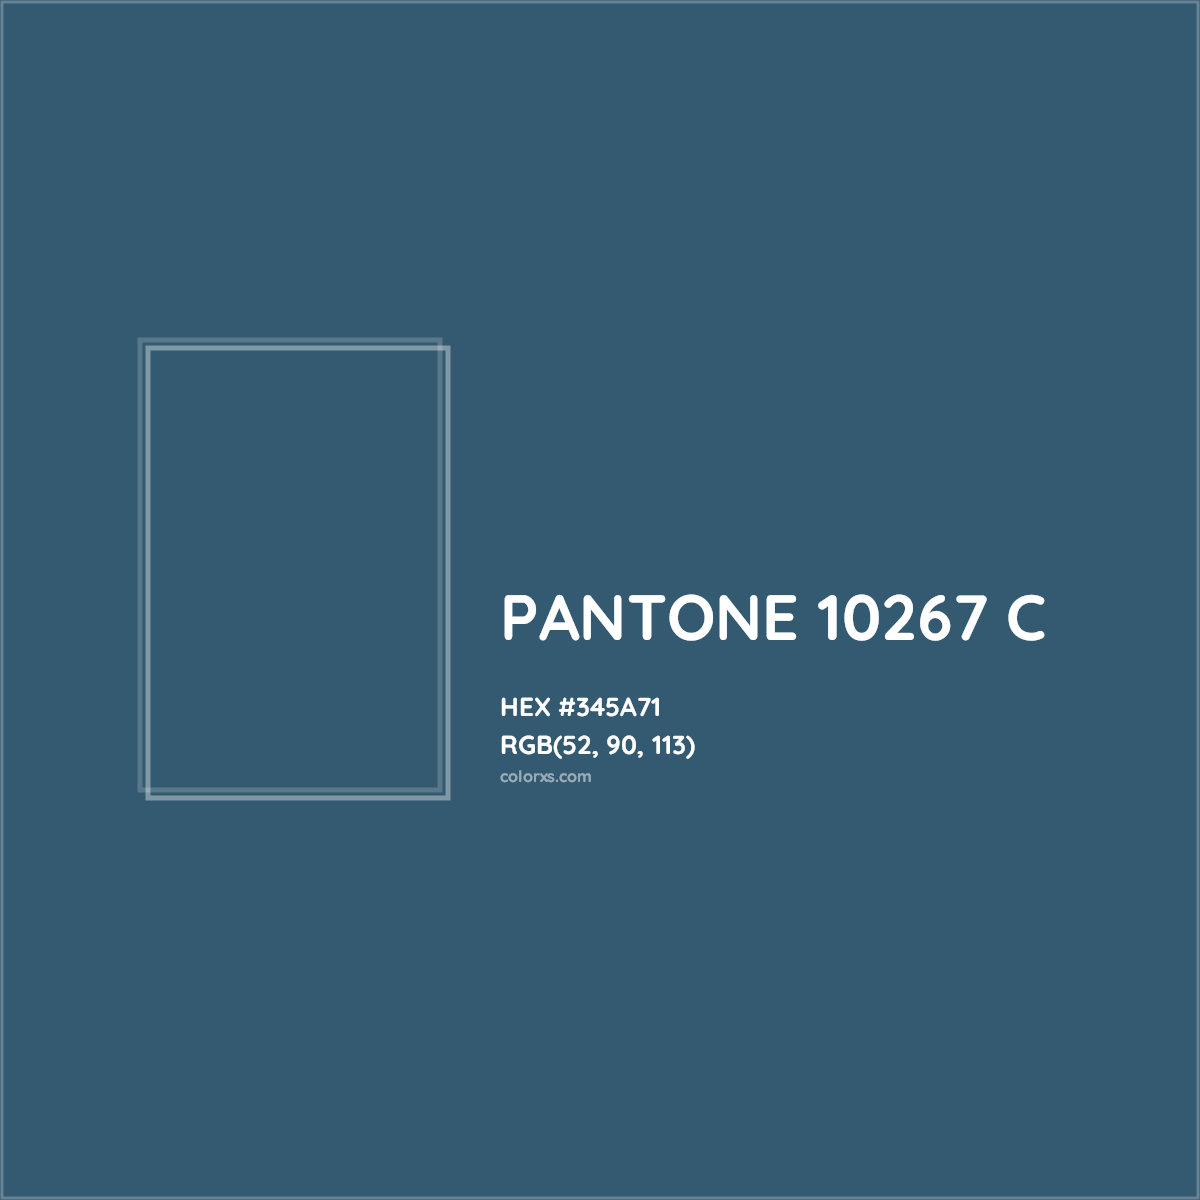 HEX #345A71 PANTONE 10267 C CMS Pantone PMS - Color Code